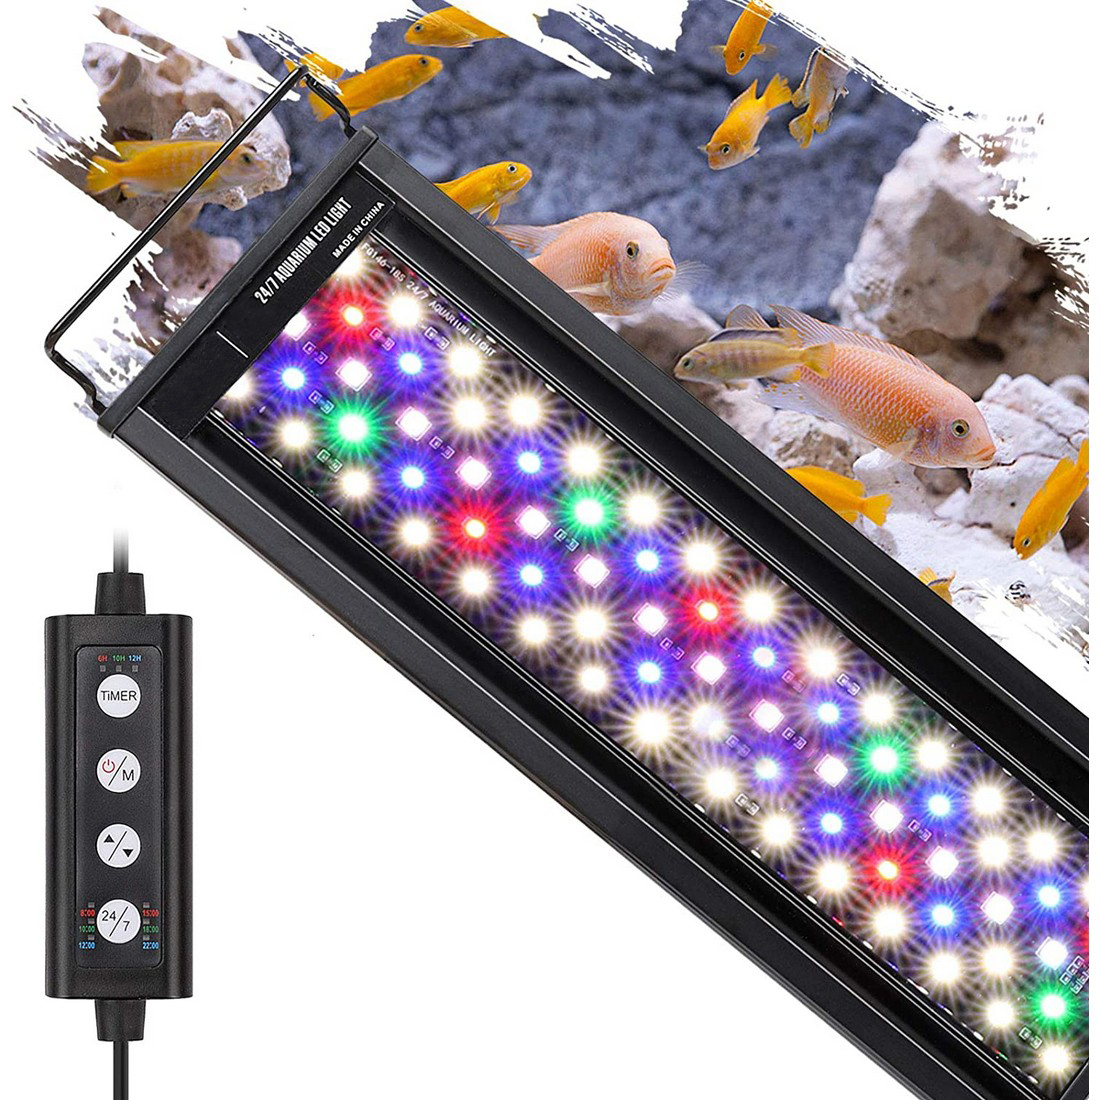 水槽ライト アクアリウムライト LED 熱帯魚ライト 水槽用 調節可能 IP68防水仕様 観賞魚飼育 水草育成用 スライド式 45cm 60cm 水槽対応_画像7